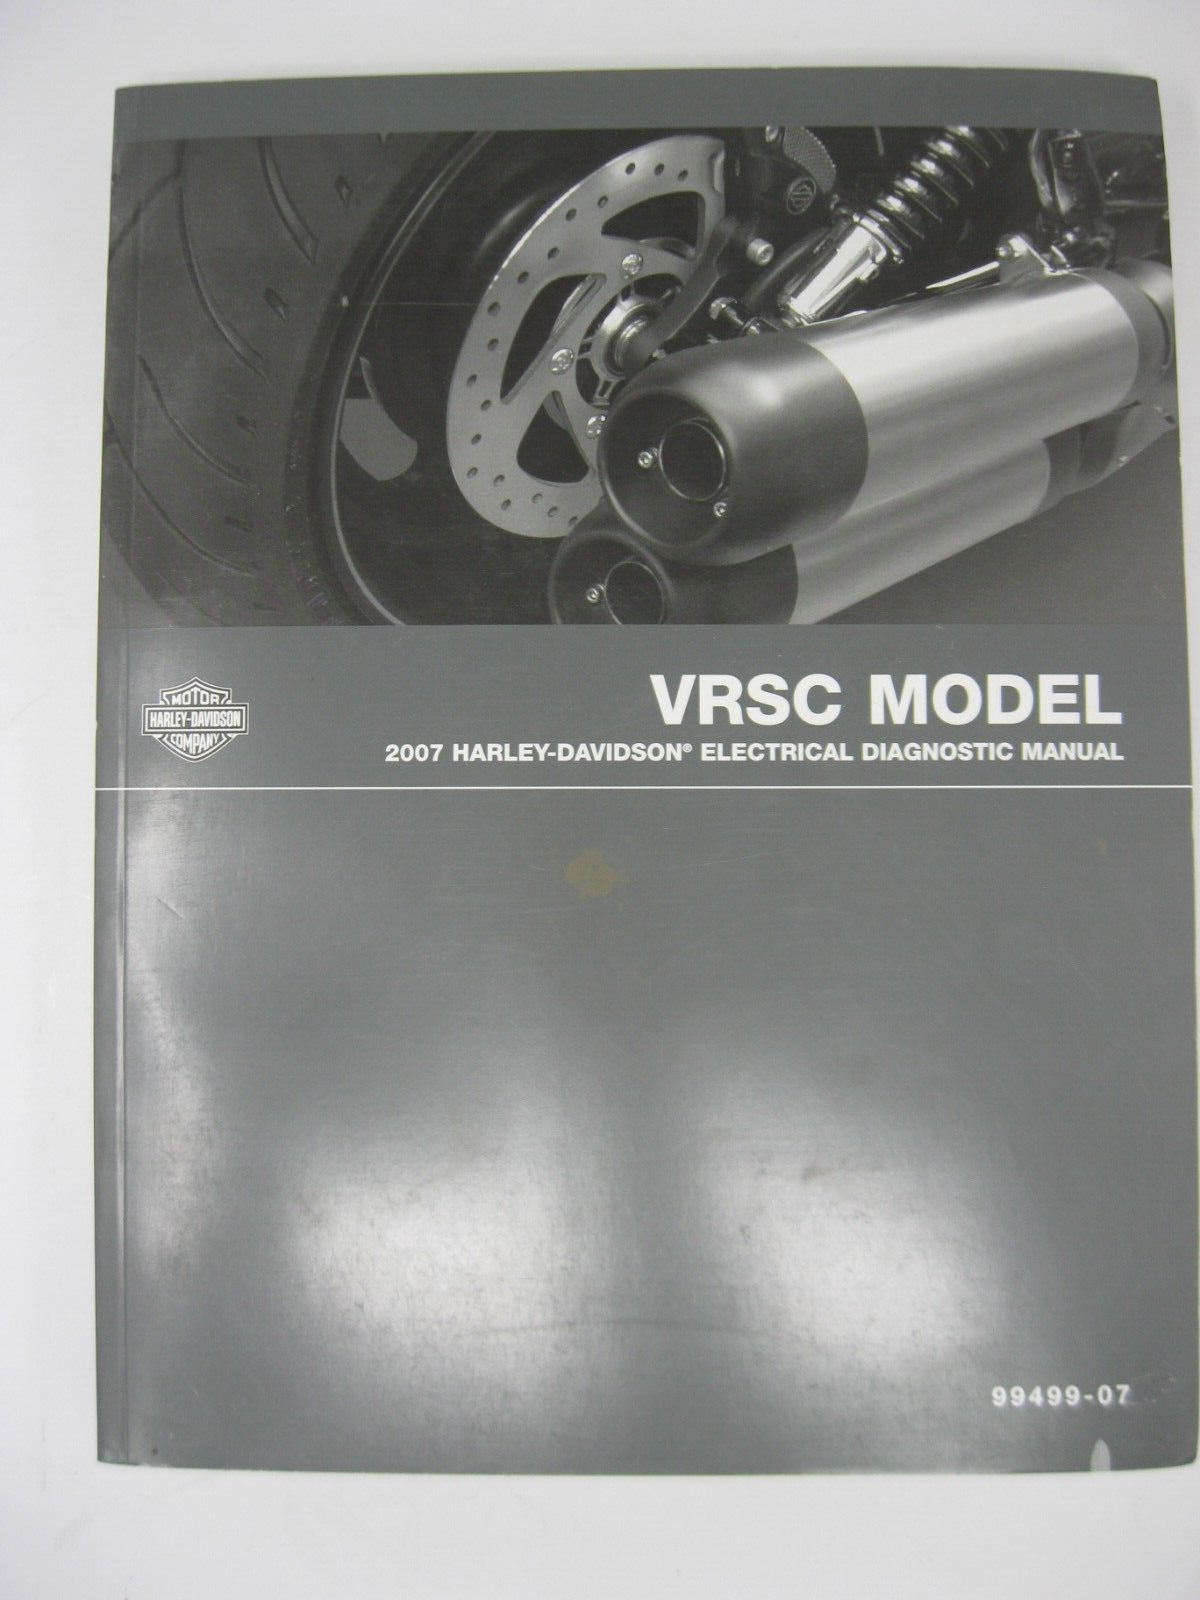 Harley-Davidson VRSC Models 2007 Electrical Diagnostic Manual 99499-07